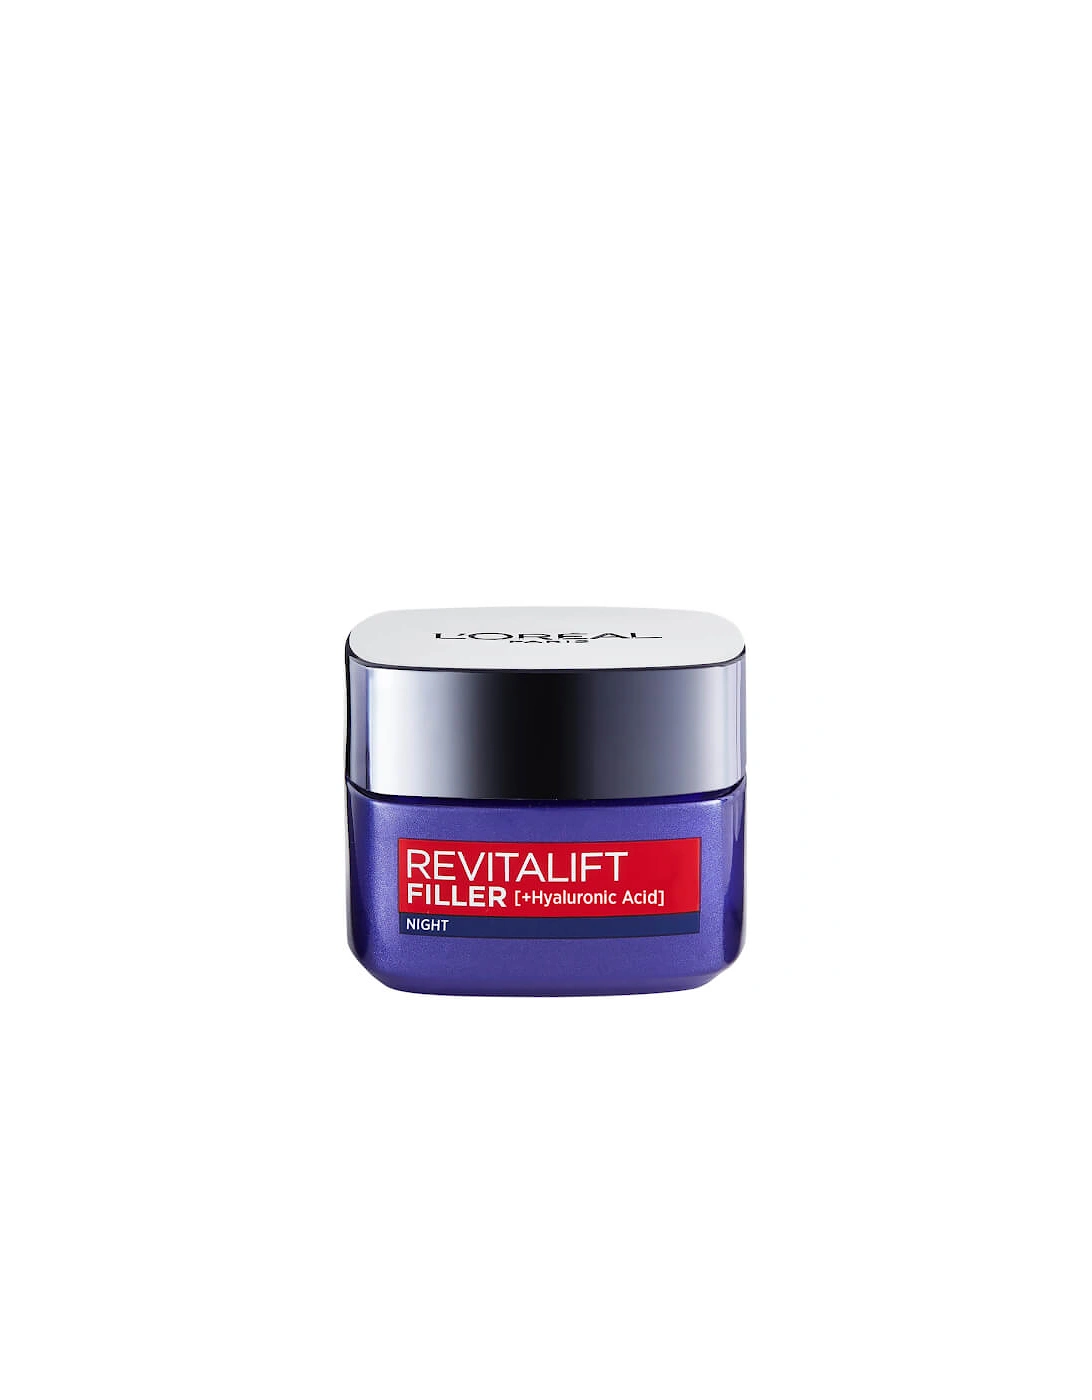 Paris Revitalift Filler and Hyaluronic Acid Anti-Ageing Night Cream 50ml - Paris, 2 of 1